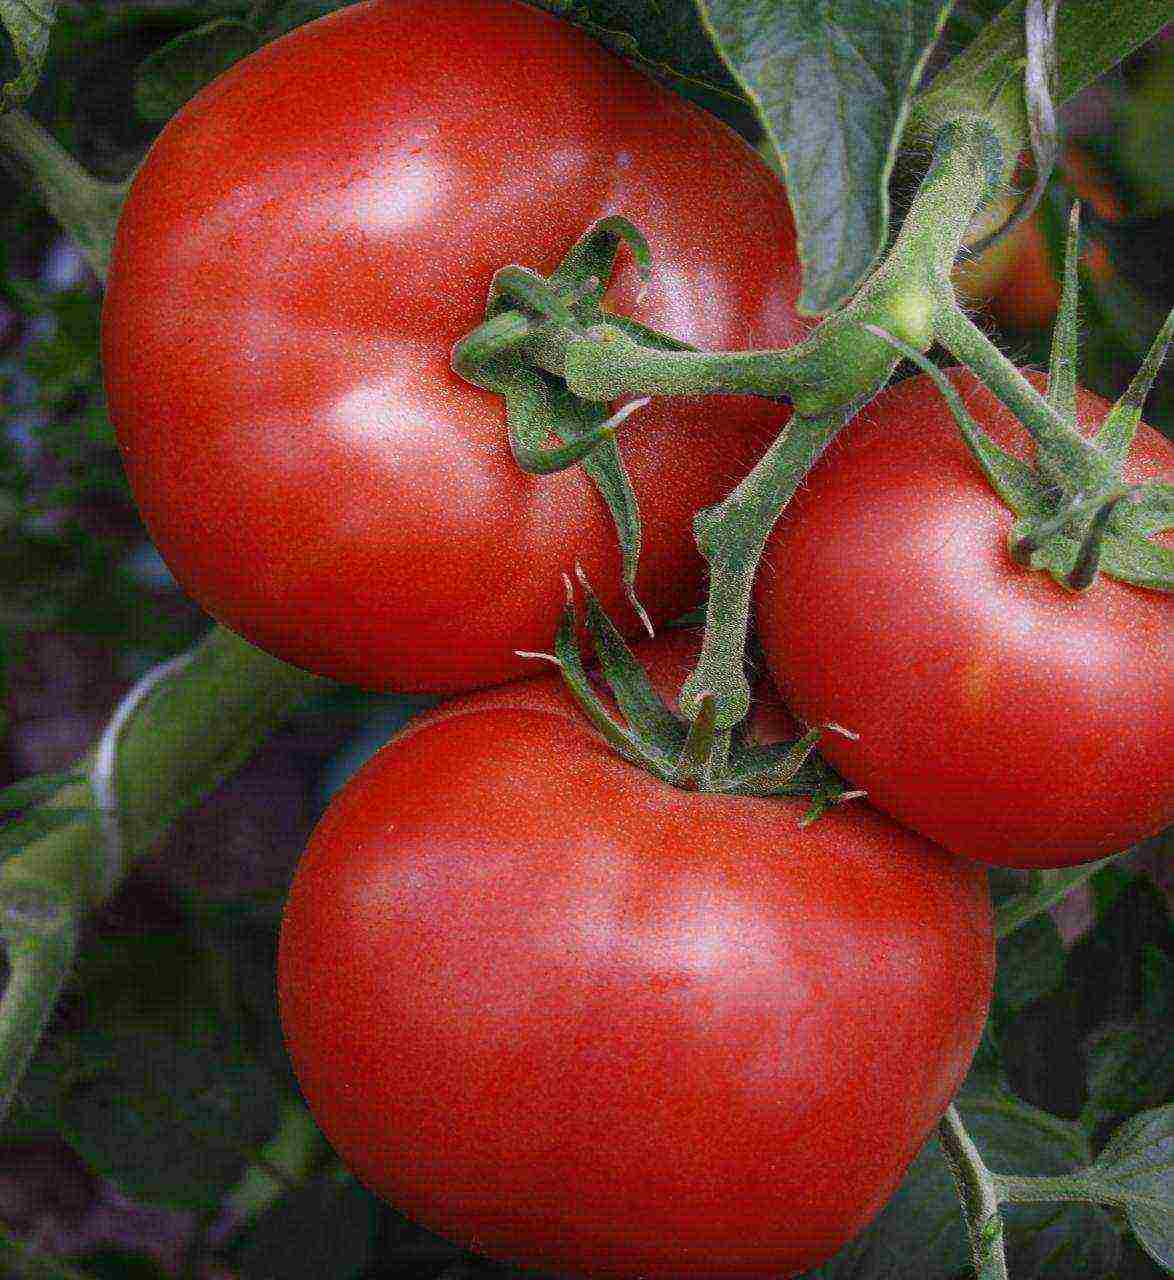 Урожайные сорта помидоров для парников и теплиц